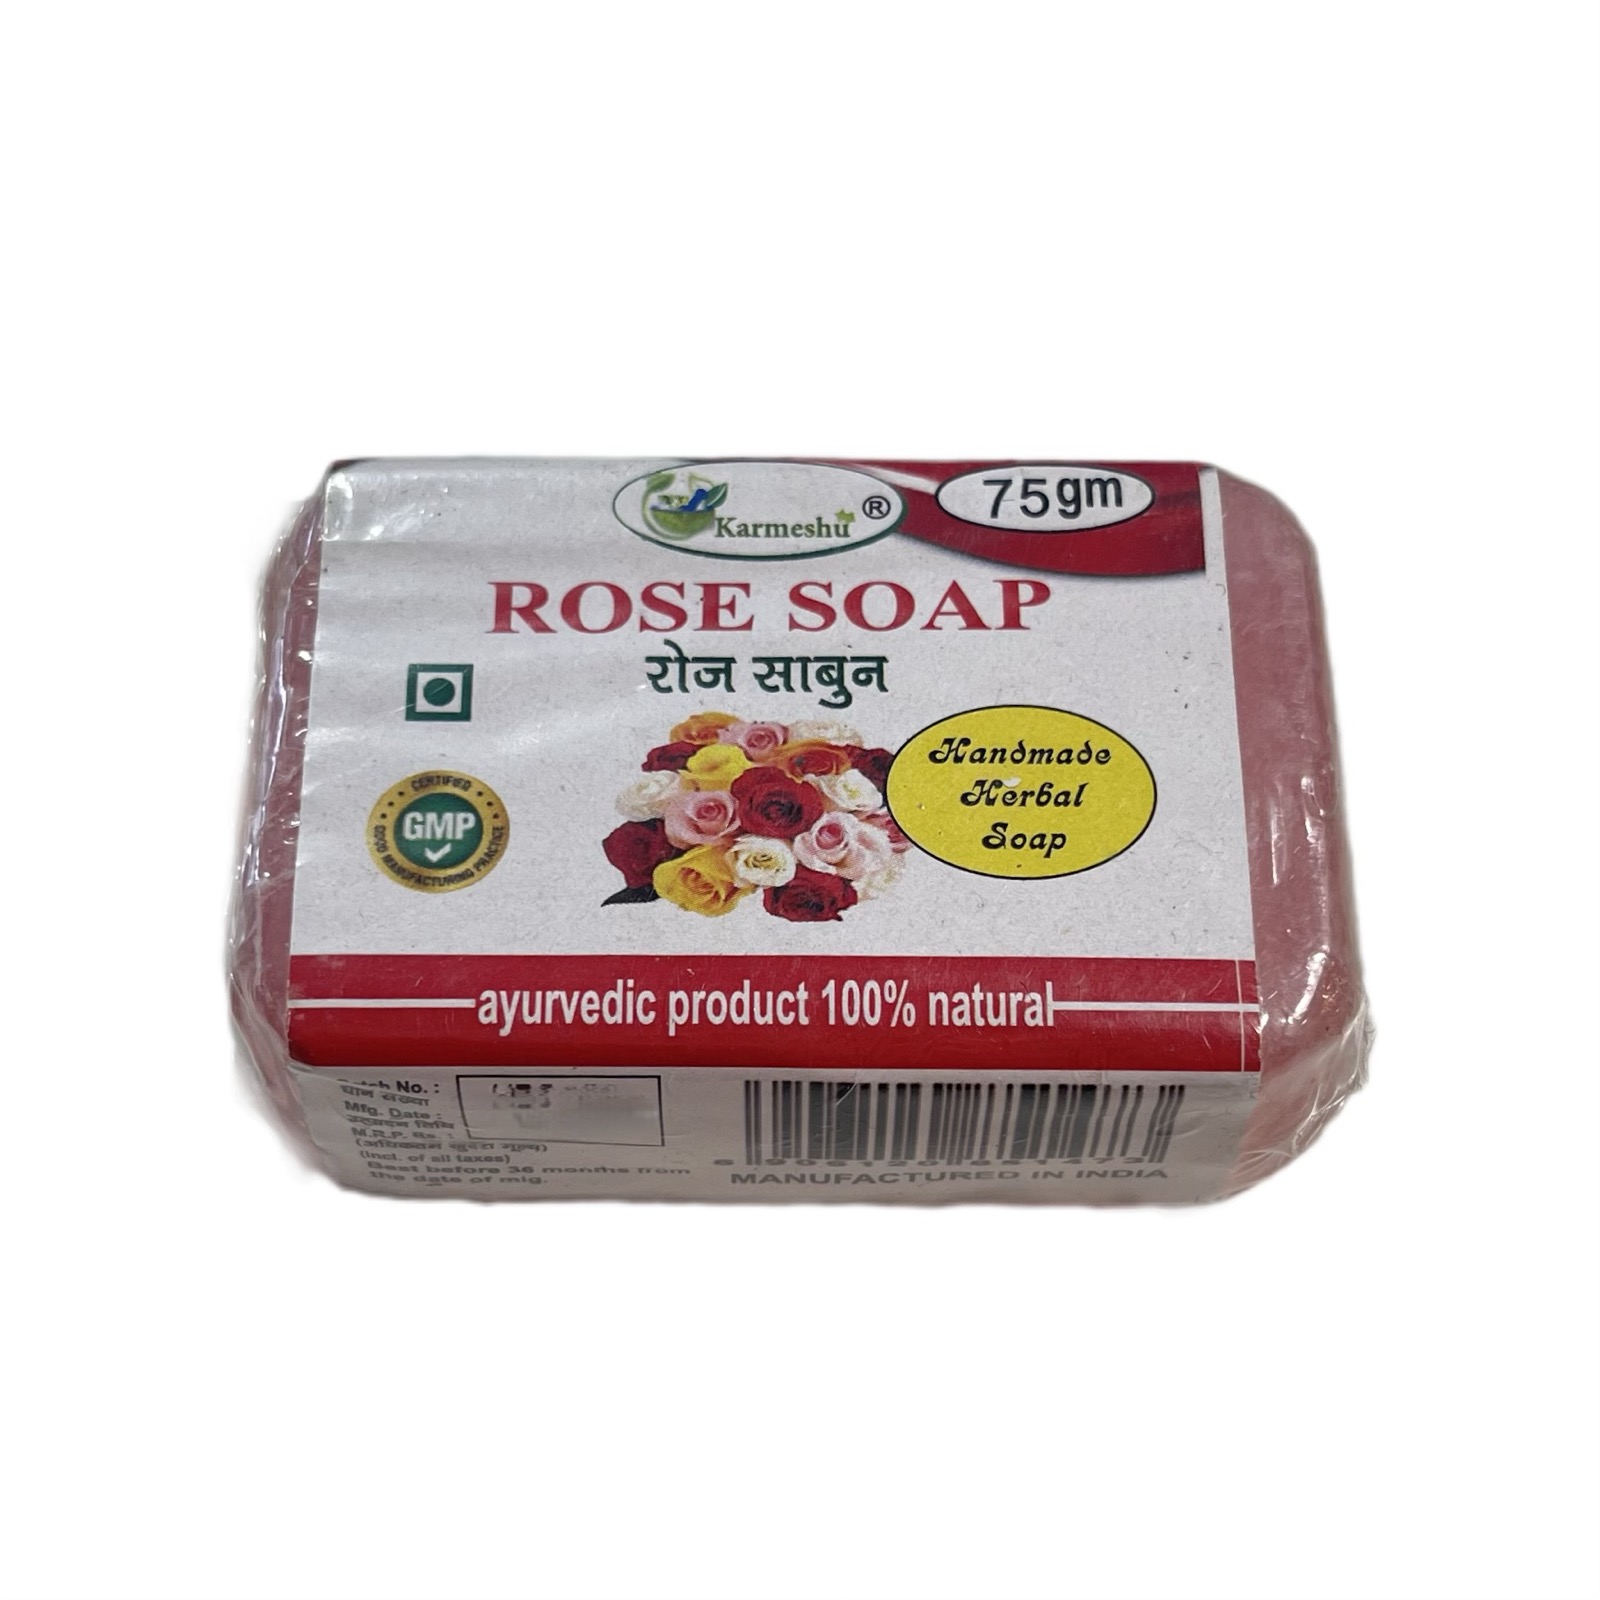 ROSE Handmade Herbal Soap, Karmeshu (РОЗА мыло ручной работы, Кармешу), 75 г.